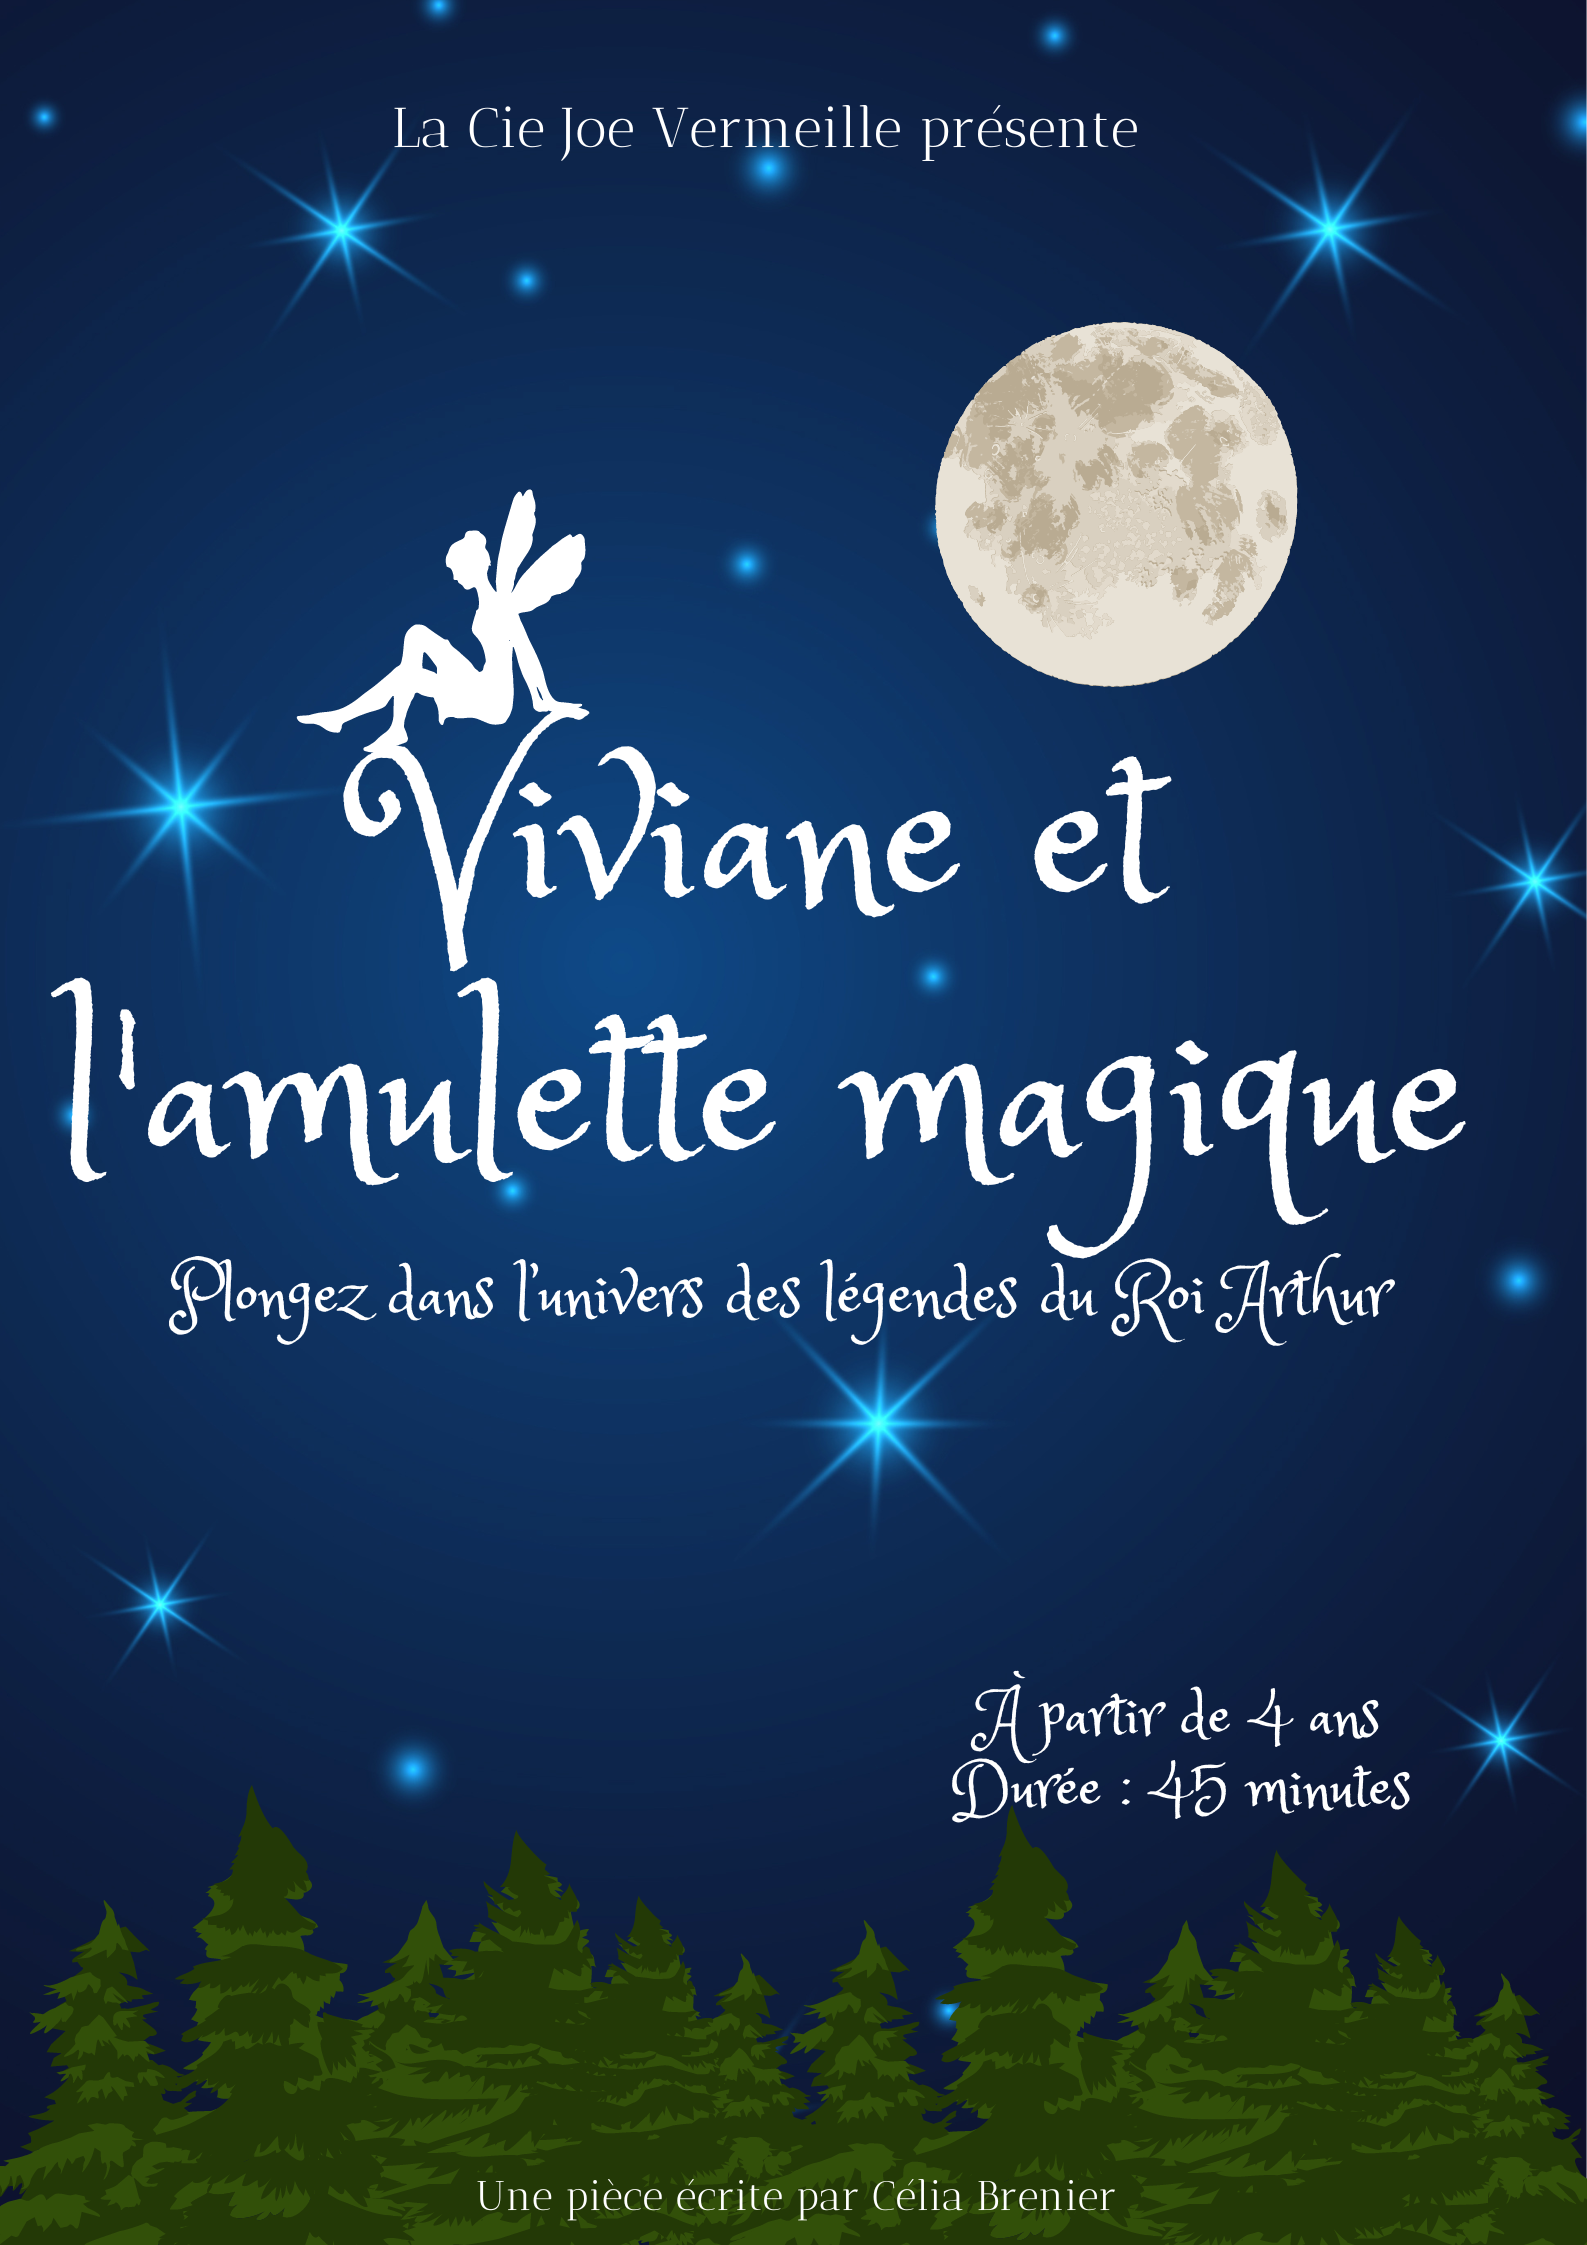 Viviane et l'amulette magique - Théâtre